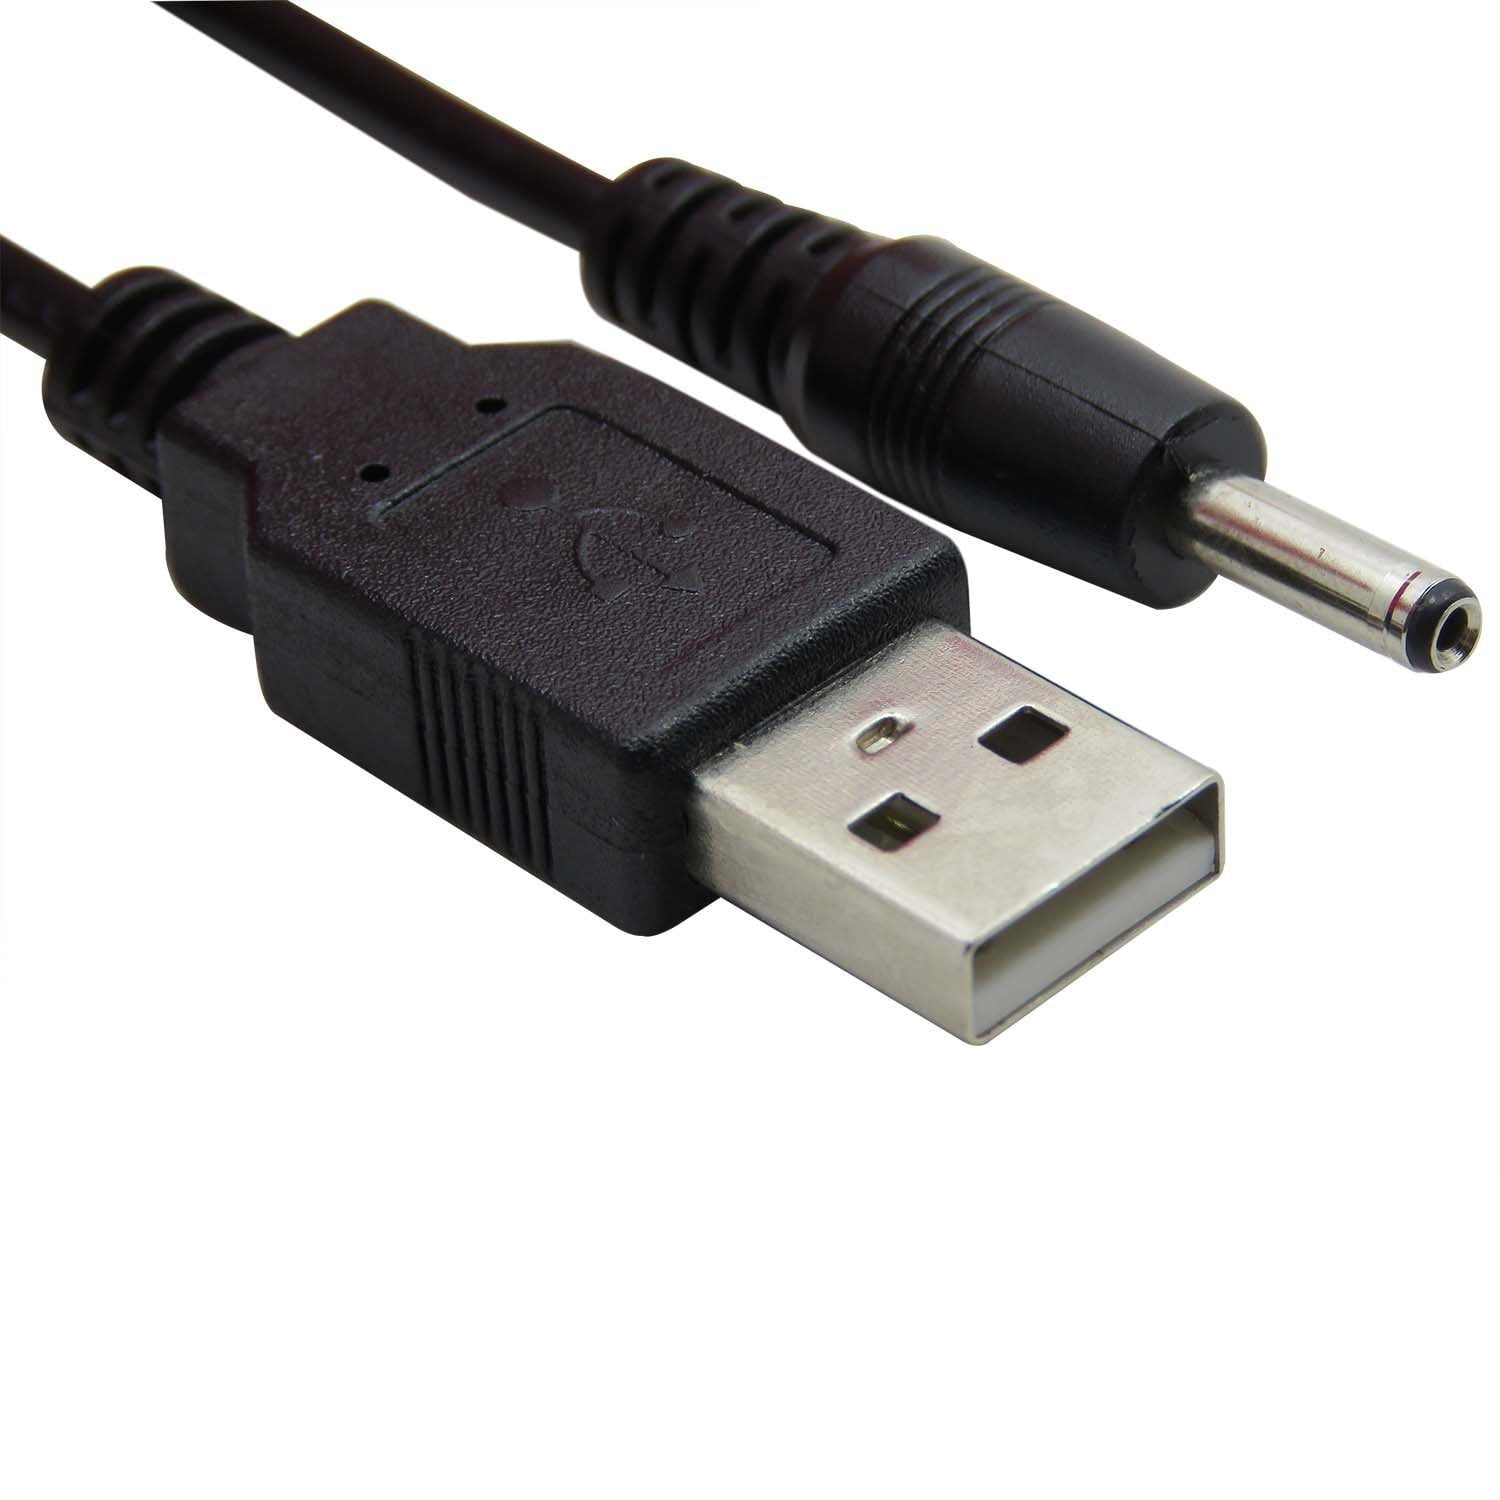 Pub crush metrisk USB A to DC 3.5 mm - 1.35 mm 5 Volt DC Barrel Jack Power Cable - Walmart.com